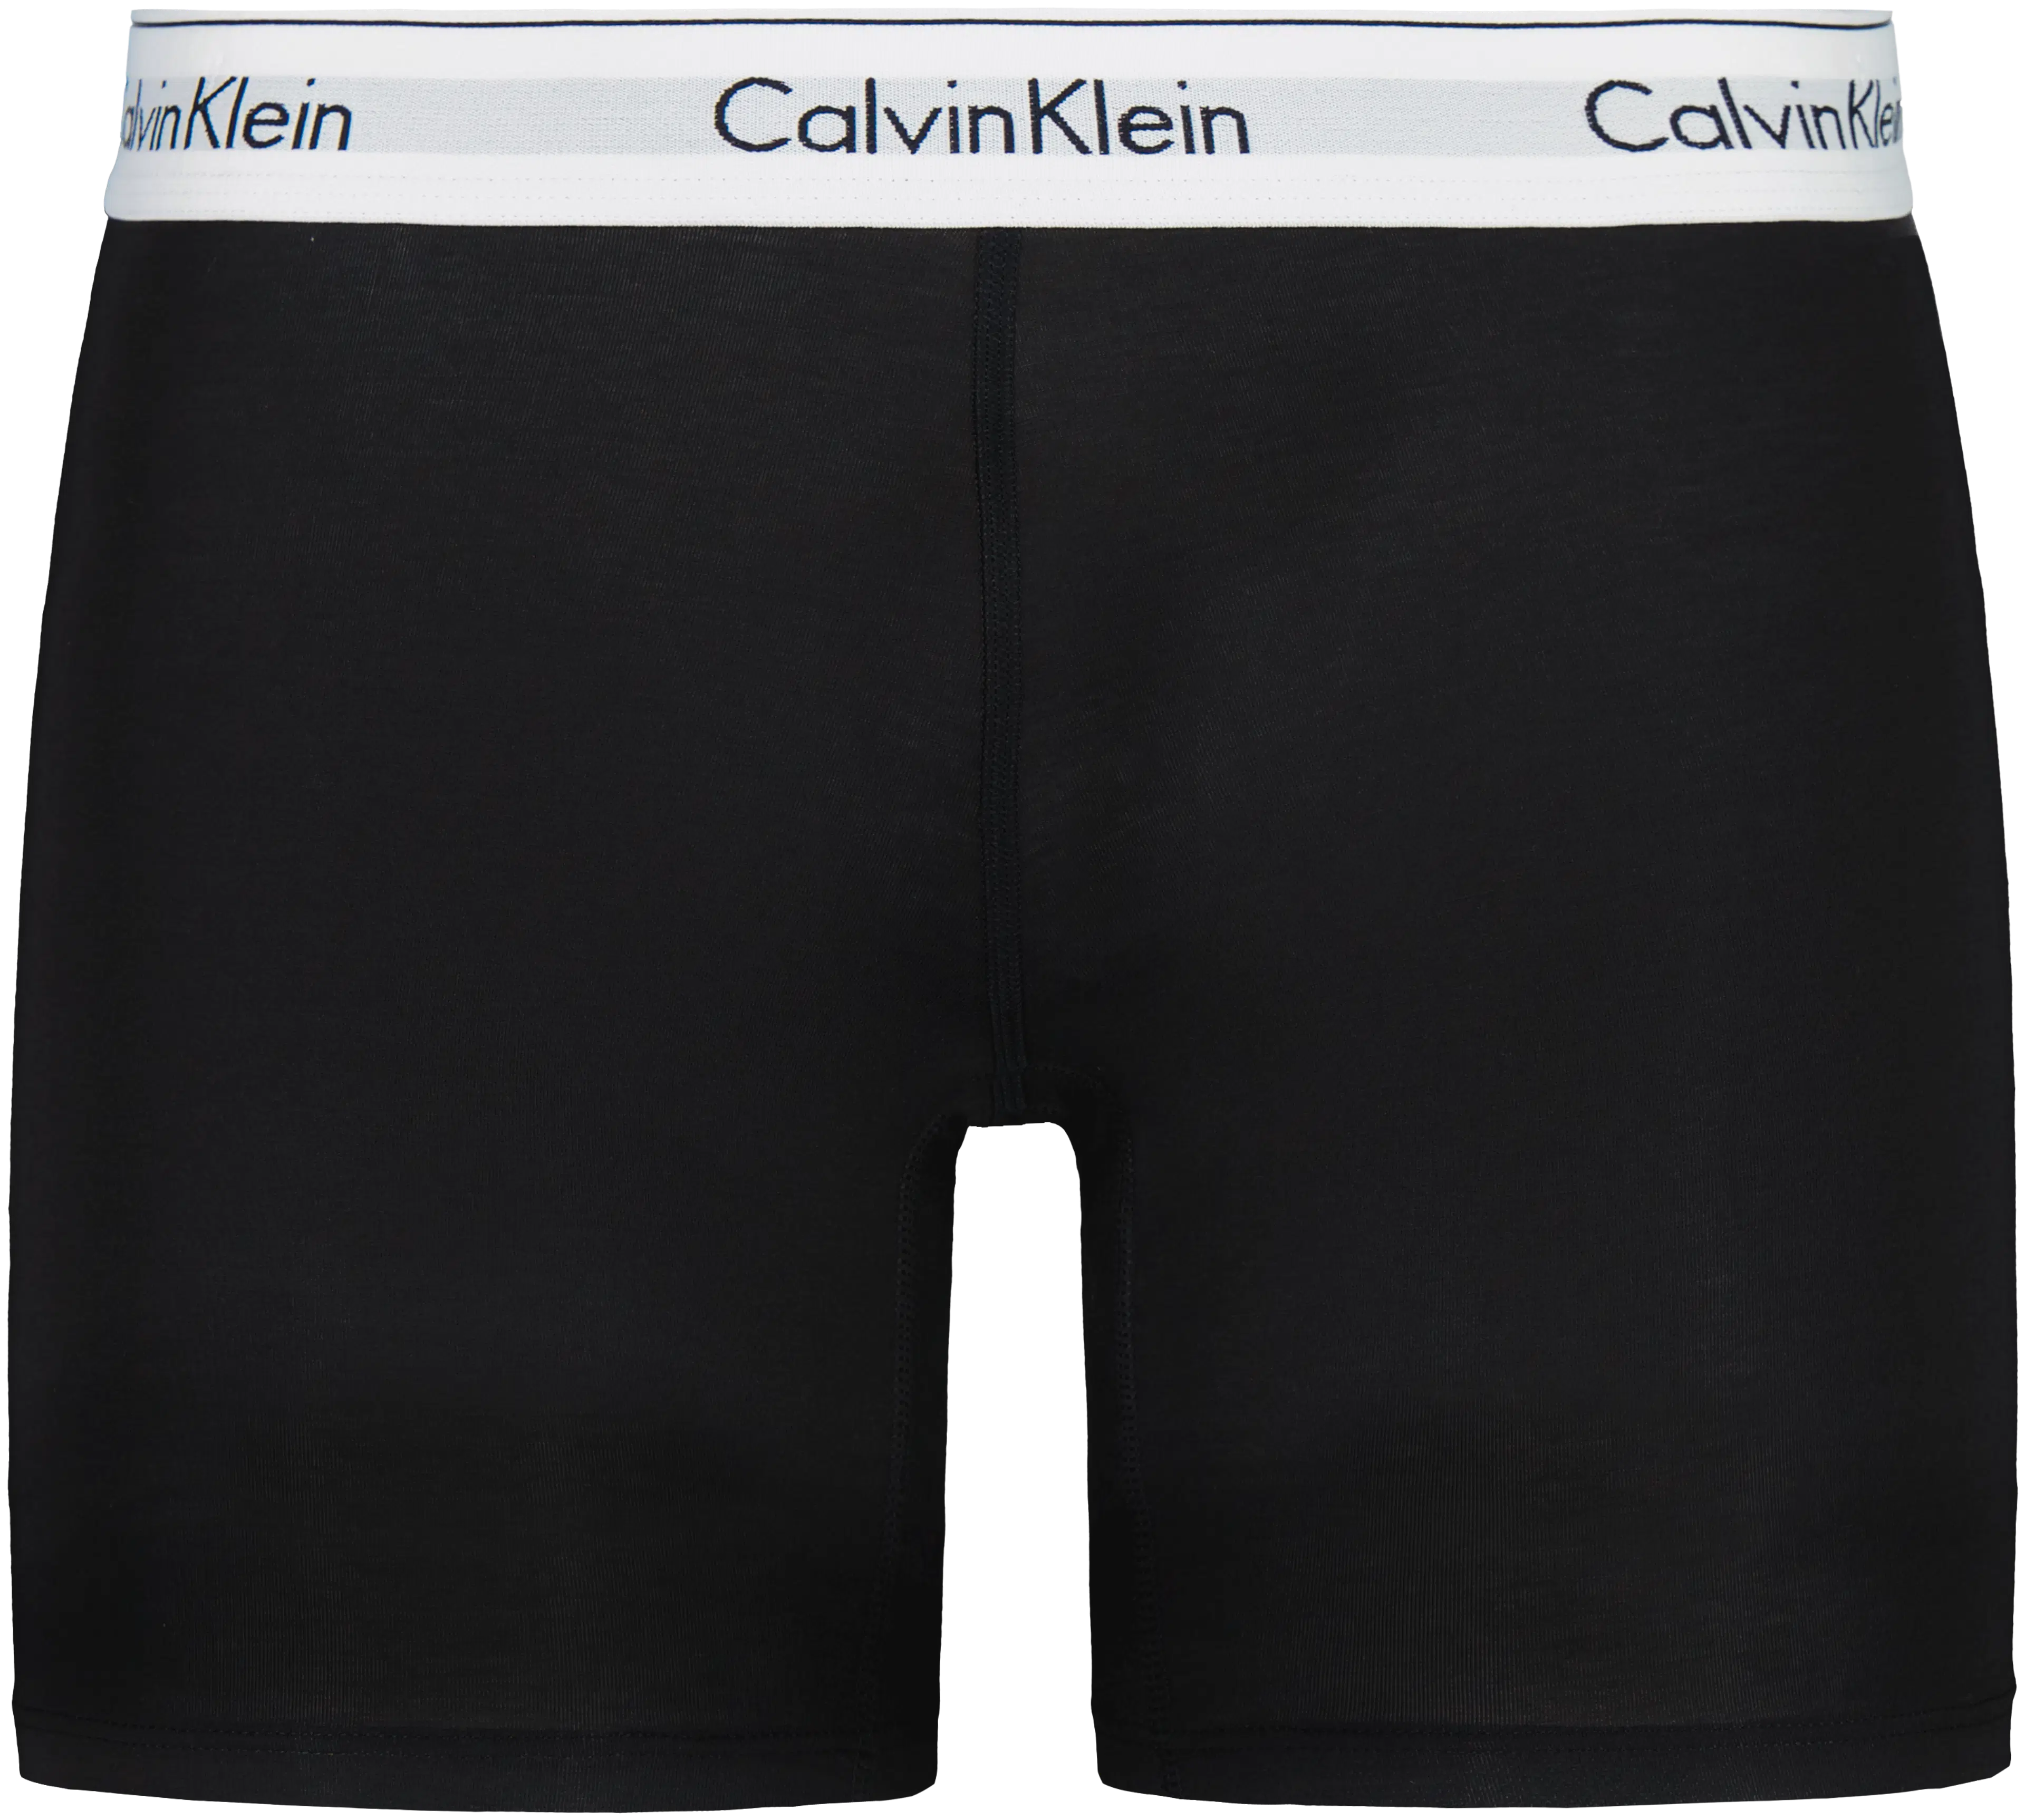 Calvin Klein Modern Cotton Boxer Brief alushousut